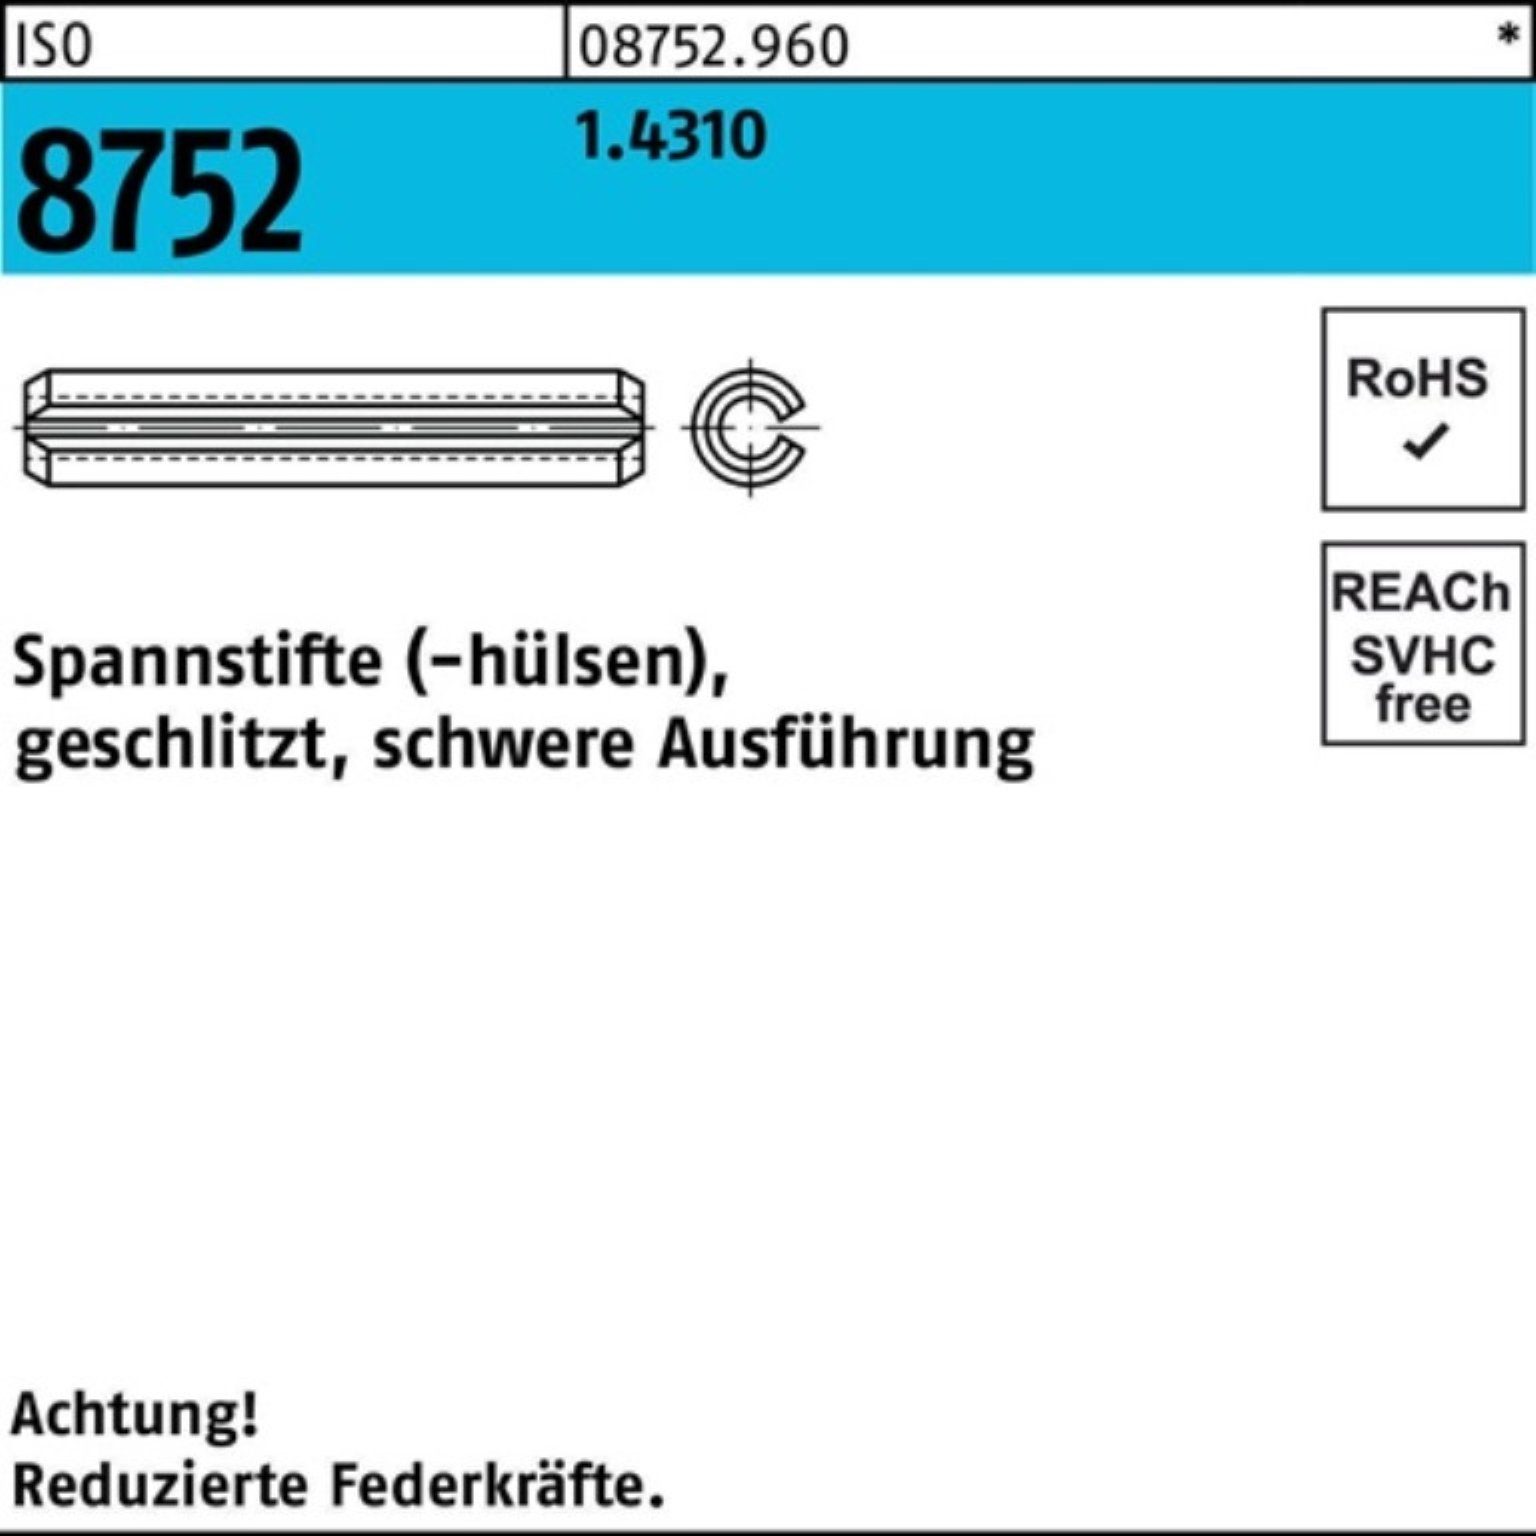 Reyher Spannstift 100er Pack Spannstift 1.4310 geschlitzt 4,5x schwere 8752 ISO Ausf. 32